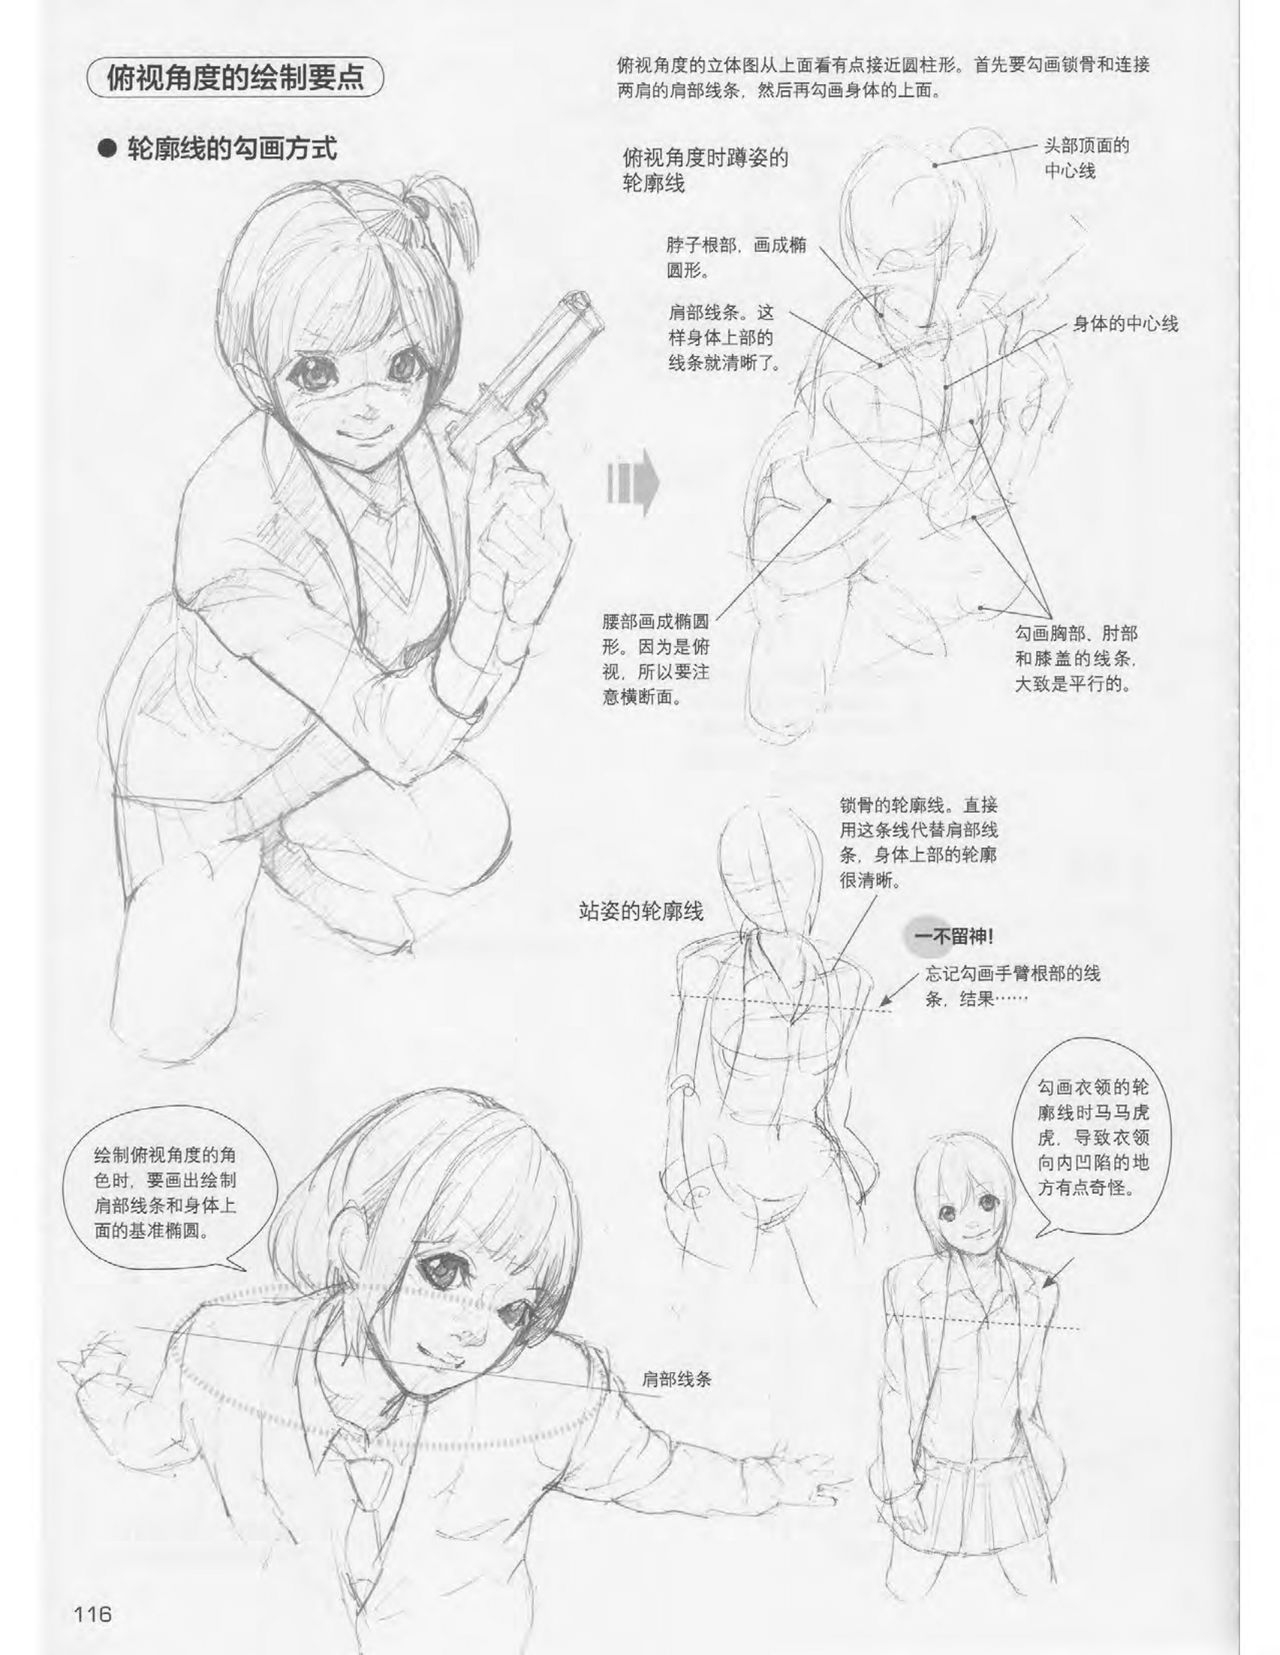 Japanese Manga Master Lecture 3: Lin Akira and Kakumaru Maru Talk About Glamorous Character Modeling 116